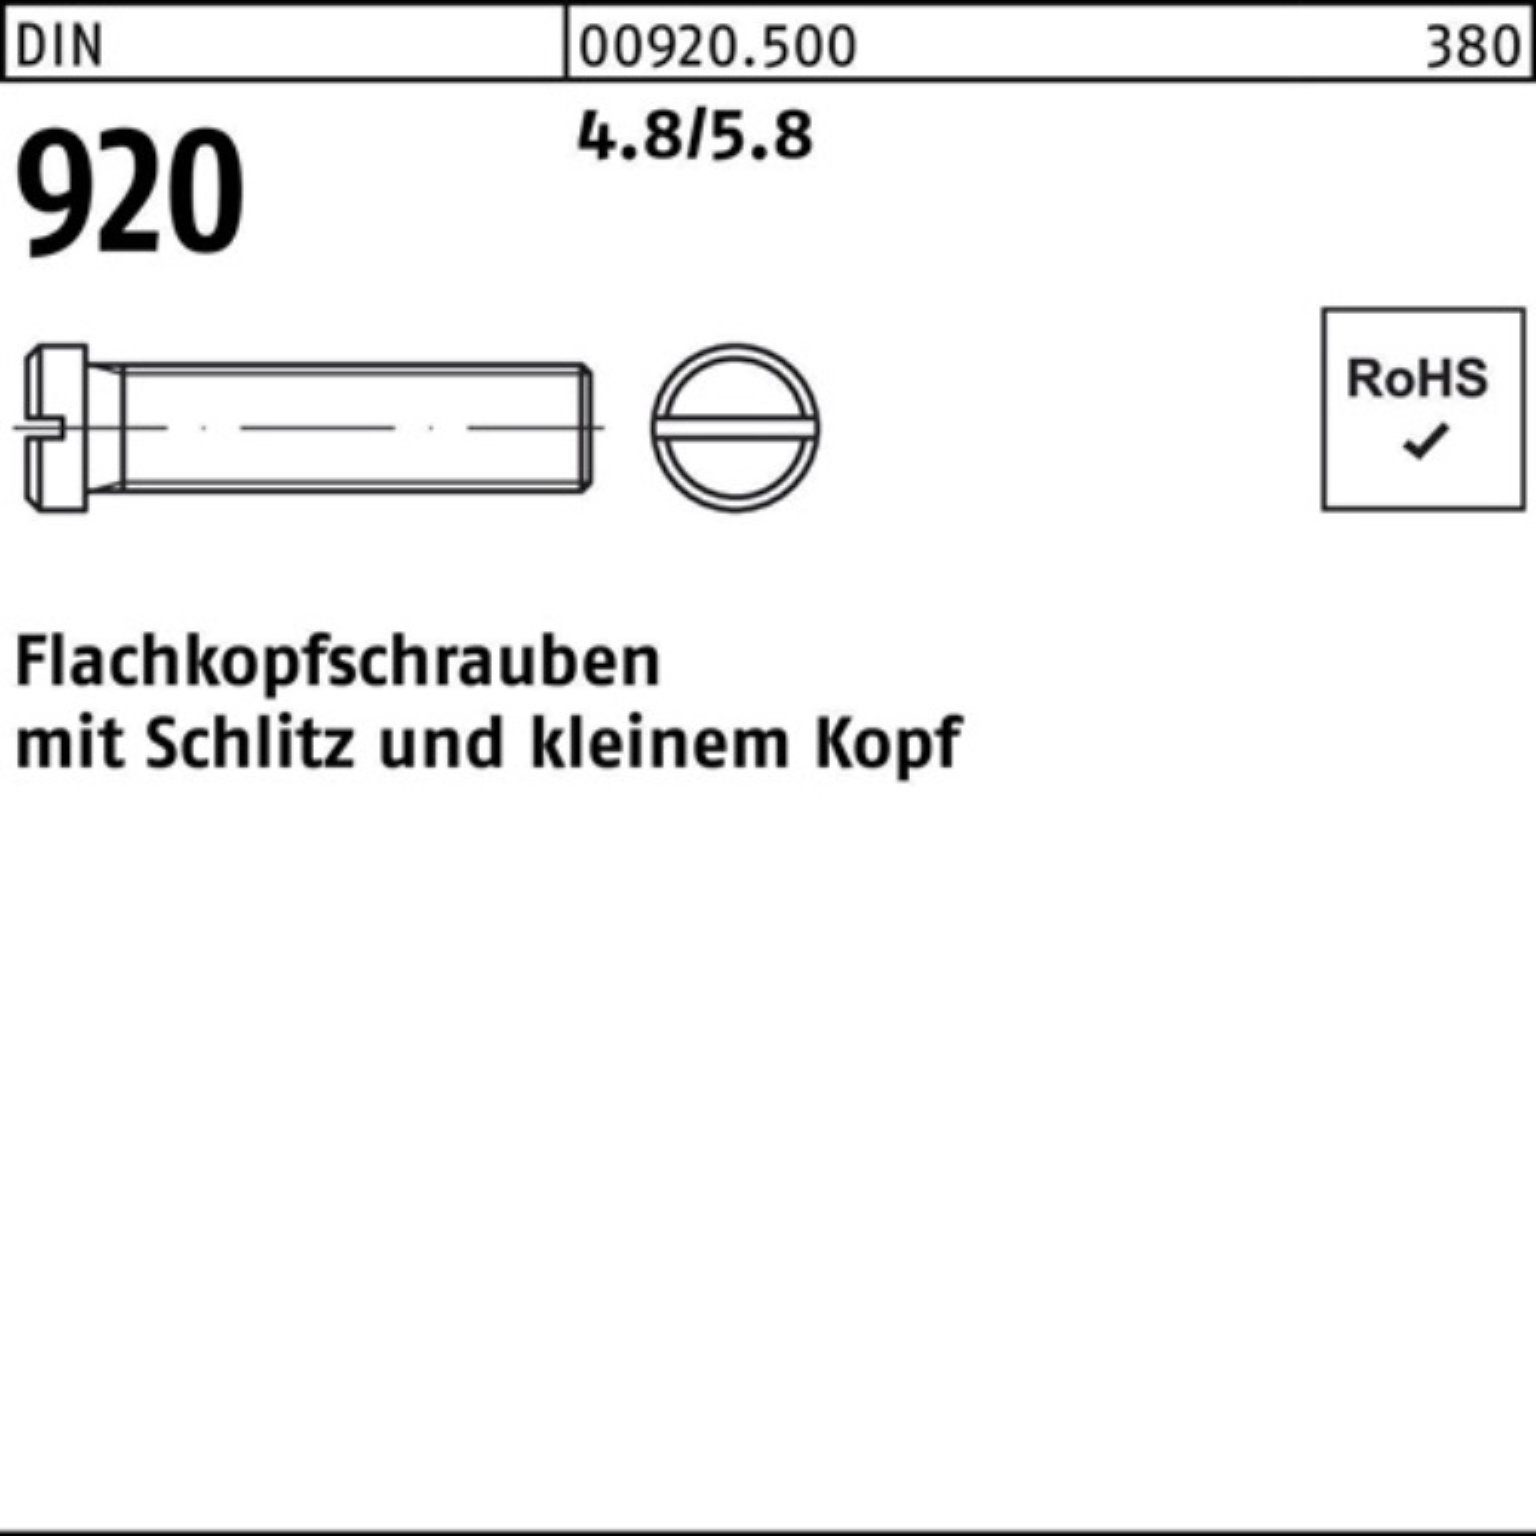 100 Reyher Flachkopfschraube 4.8/5.8 M4x 920 Pack 100er 6 Schraube Stück DIN Schlitz